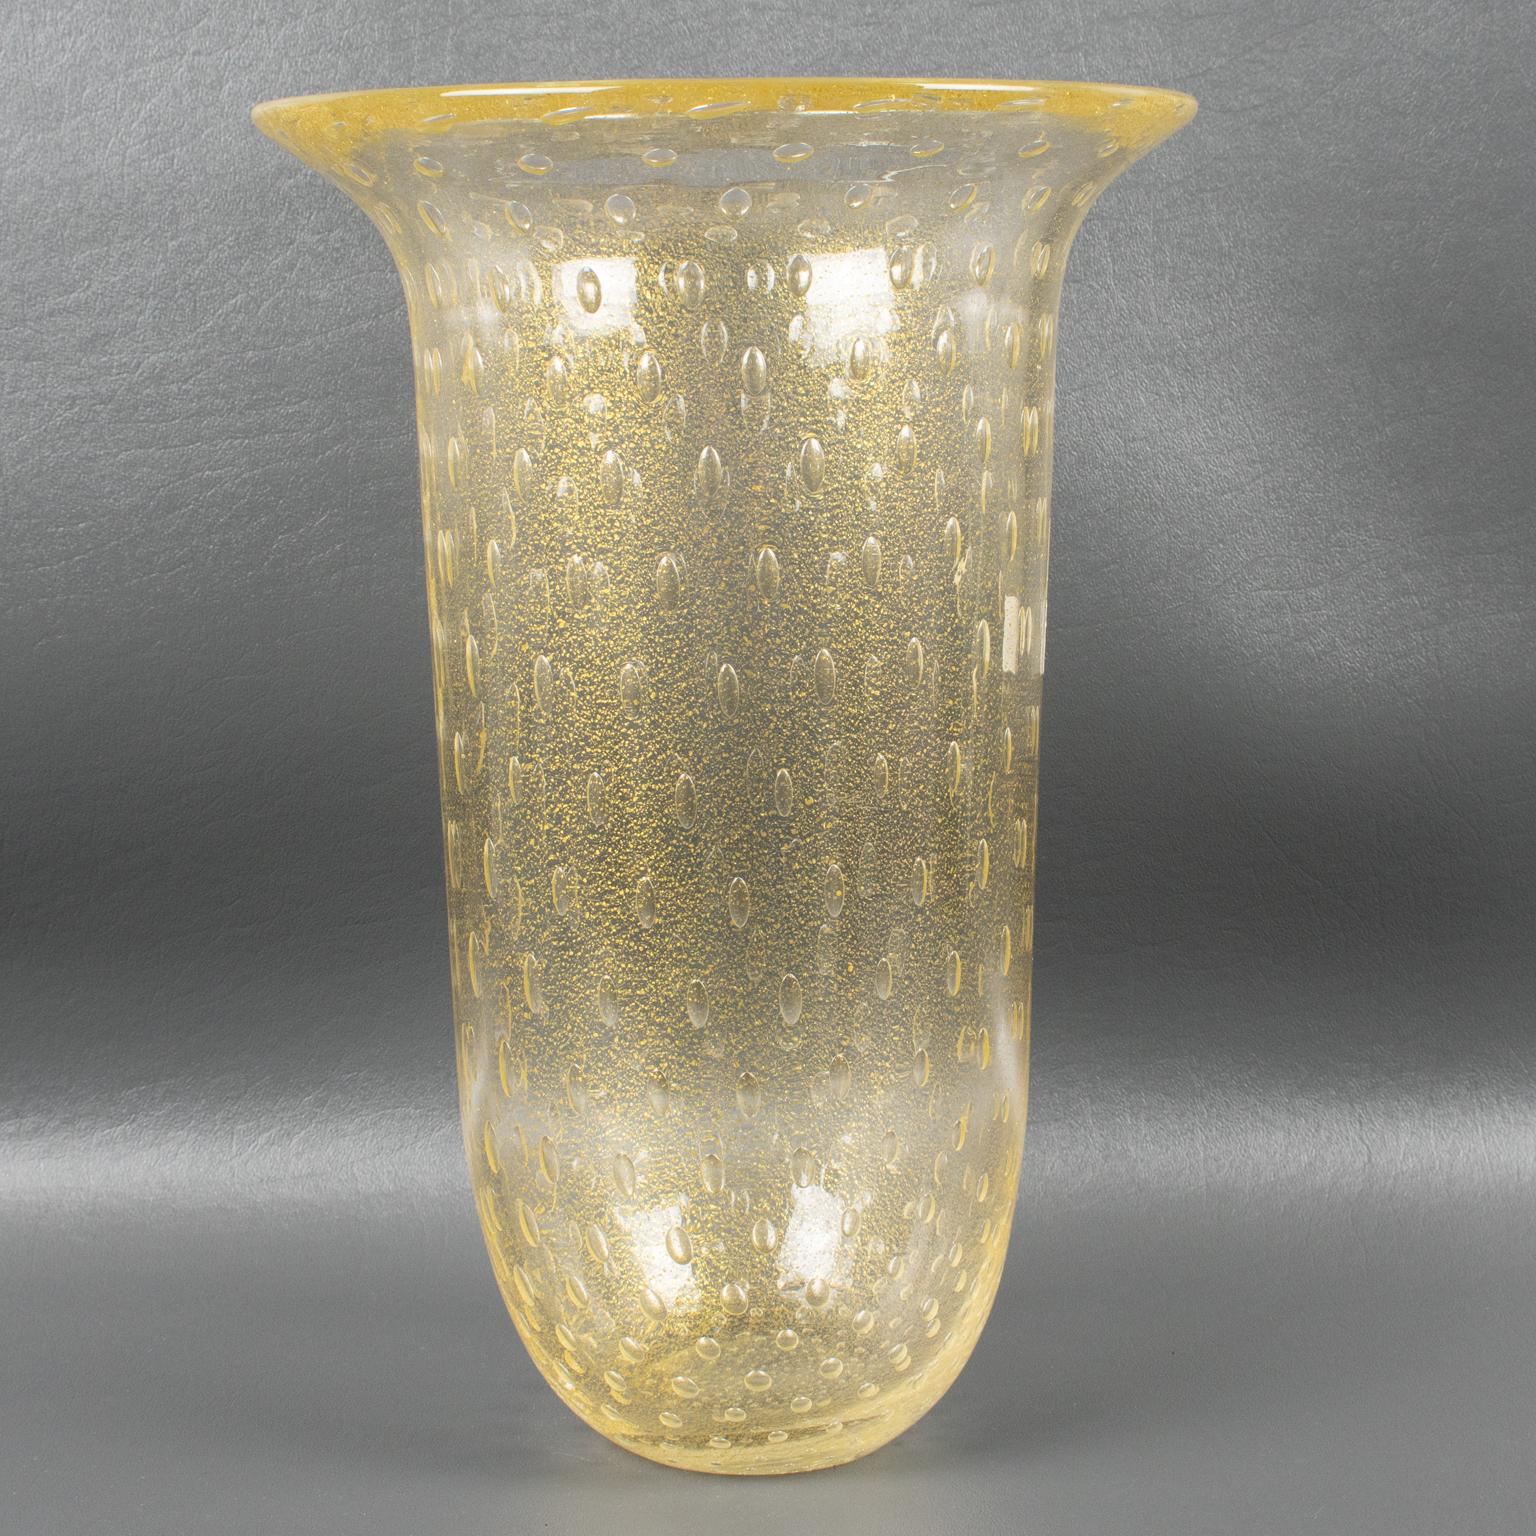 Italian Art Glass Murano Vase Gold Flakes and Bubbles by Gambaro & Poggi For Sale 6